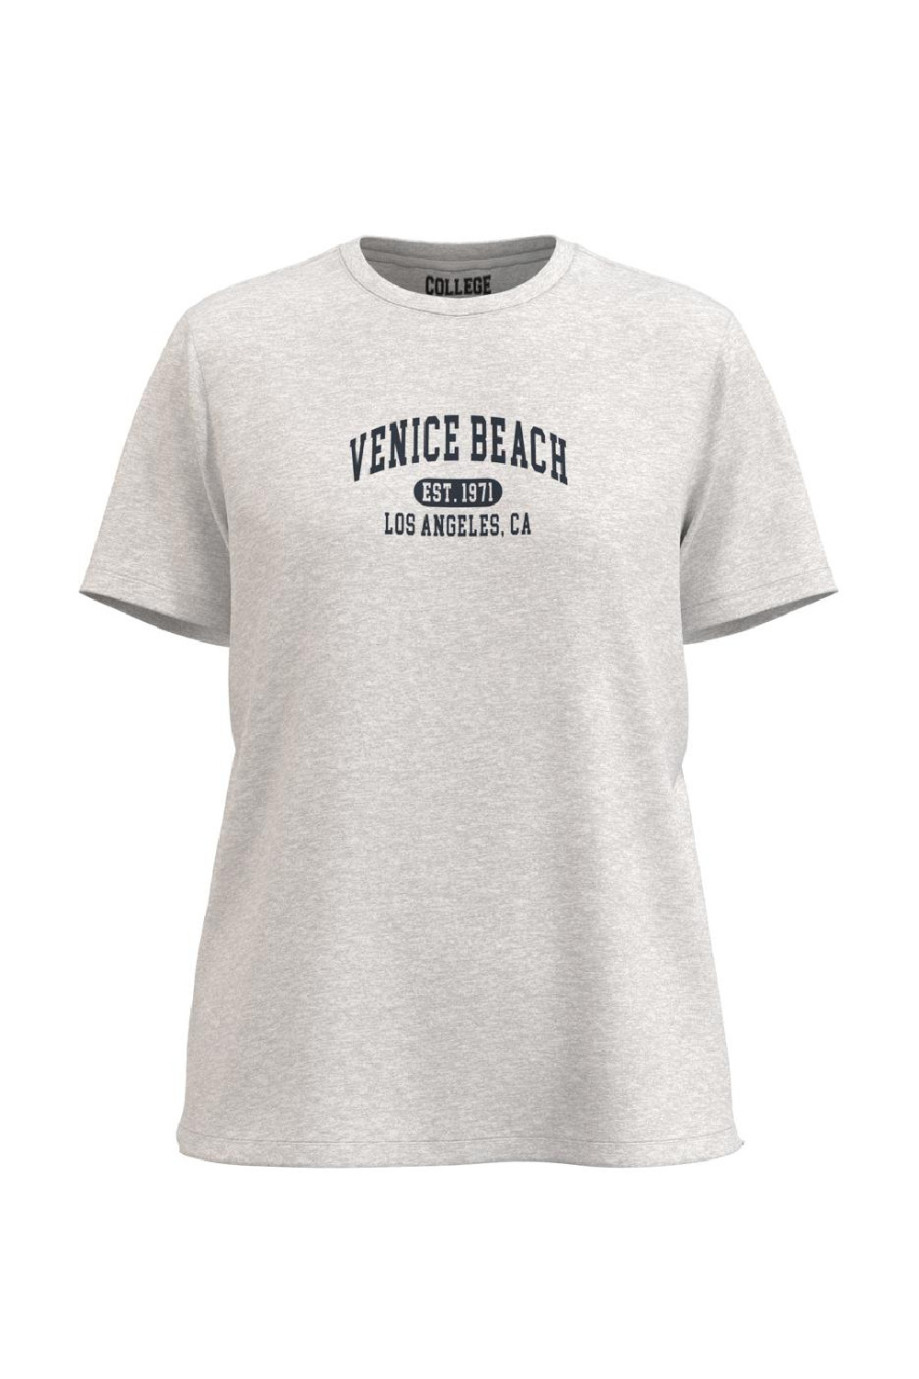 Camiseta unicolor en algodón con manga corta y diseño college